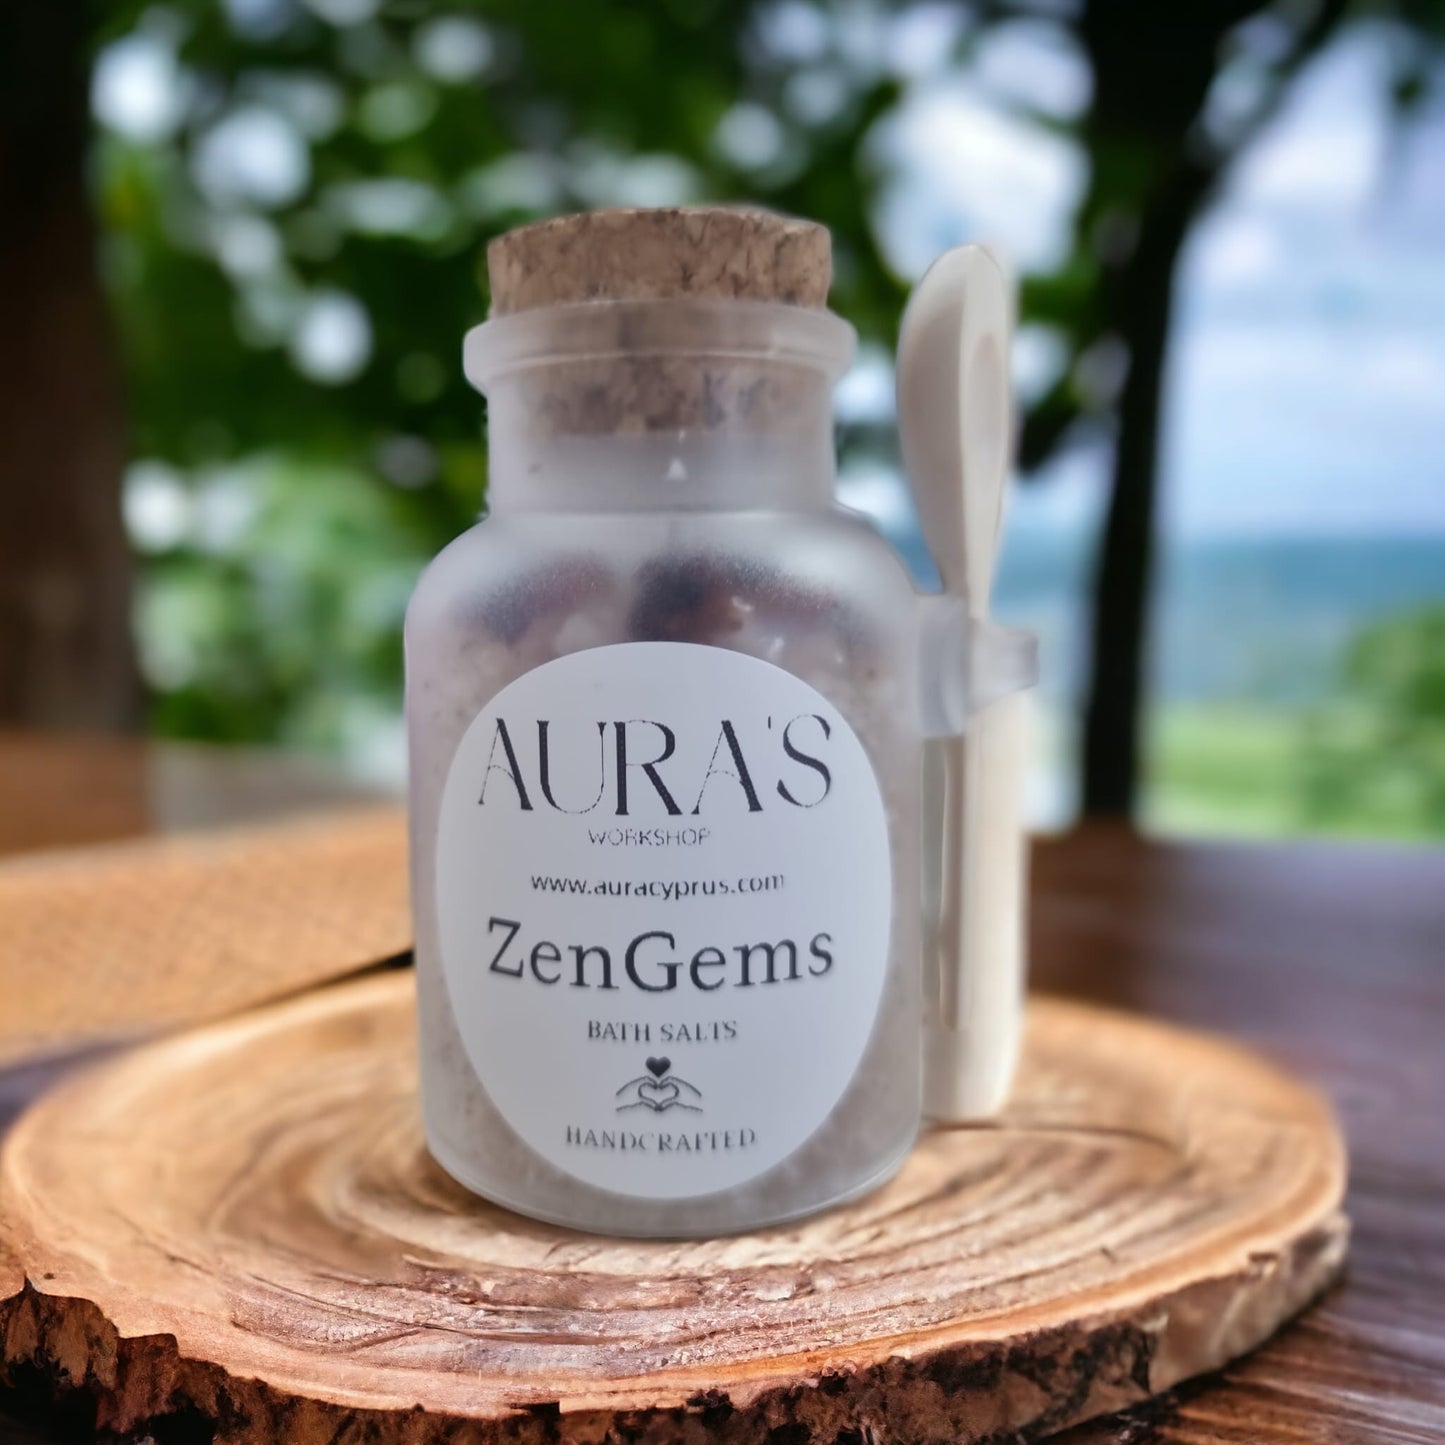 ZenGems Bath Salts Bottle & Wooden Spoon 100 grams